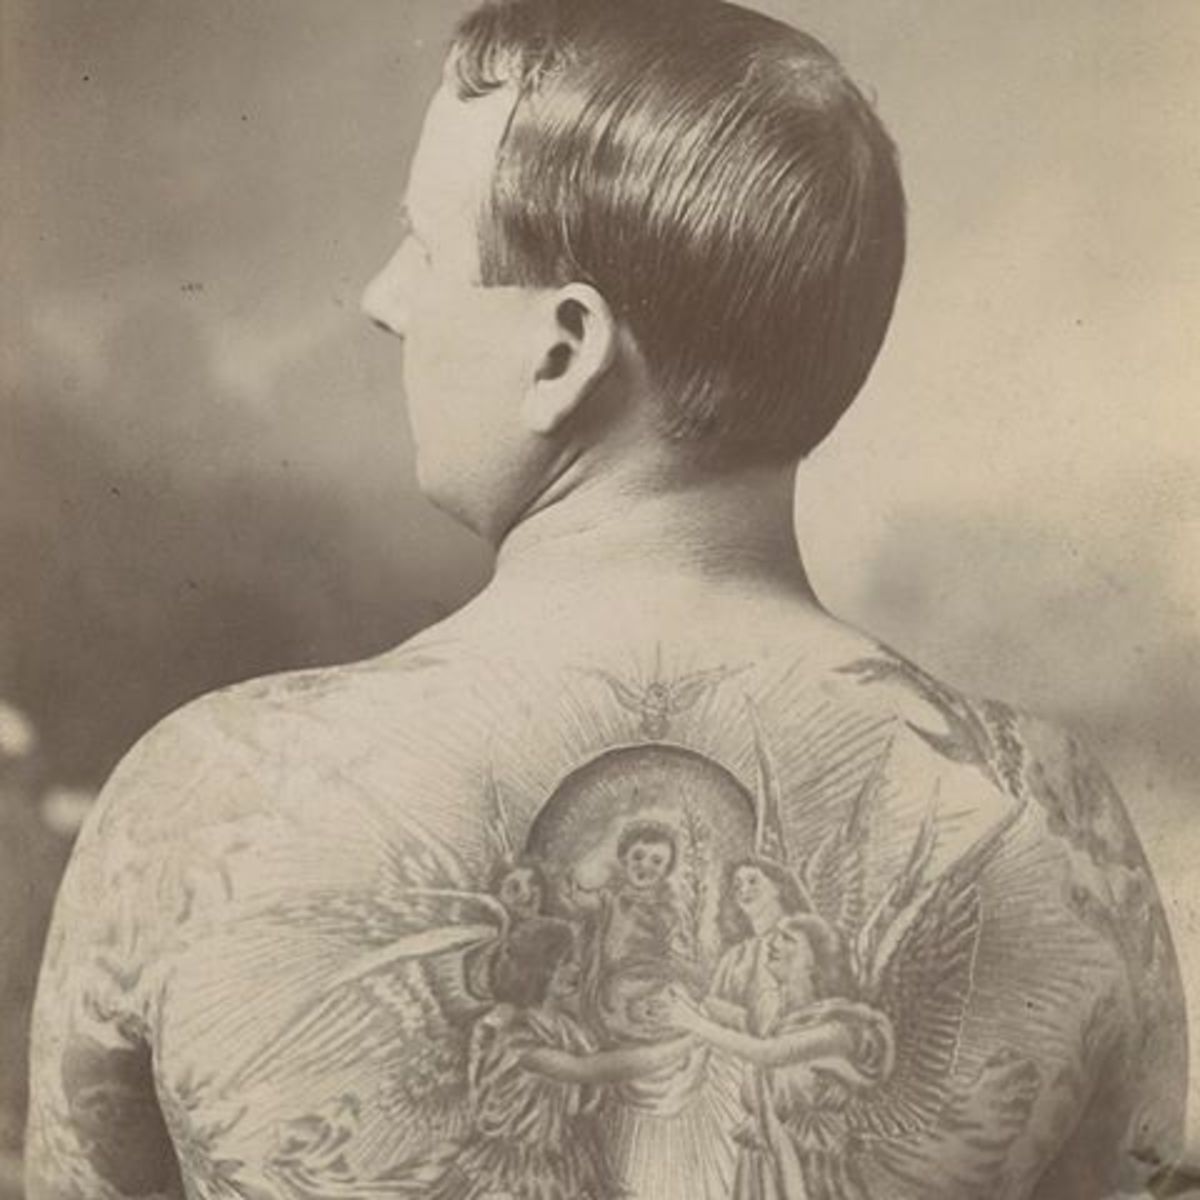 Lew juutalaisen tatuointi